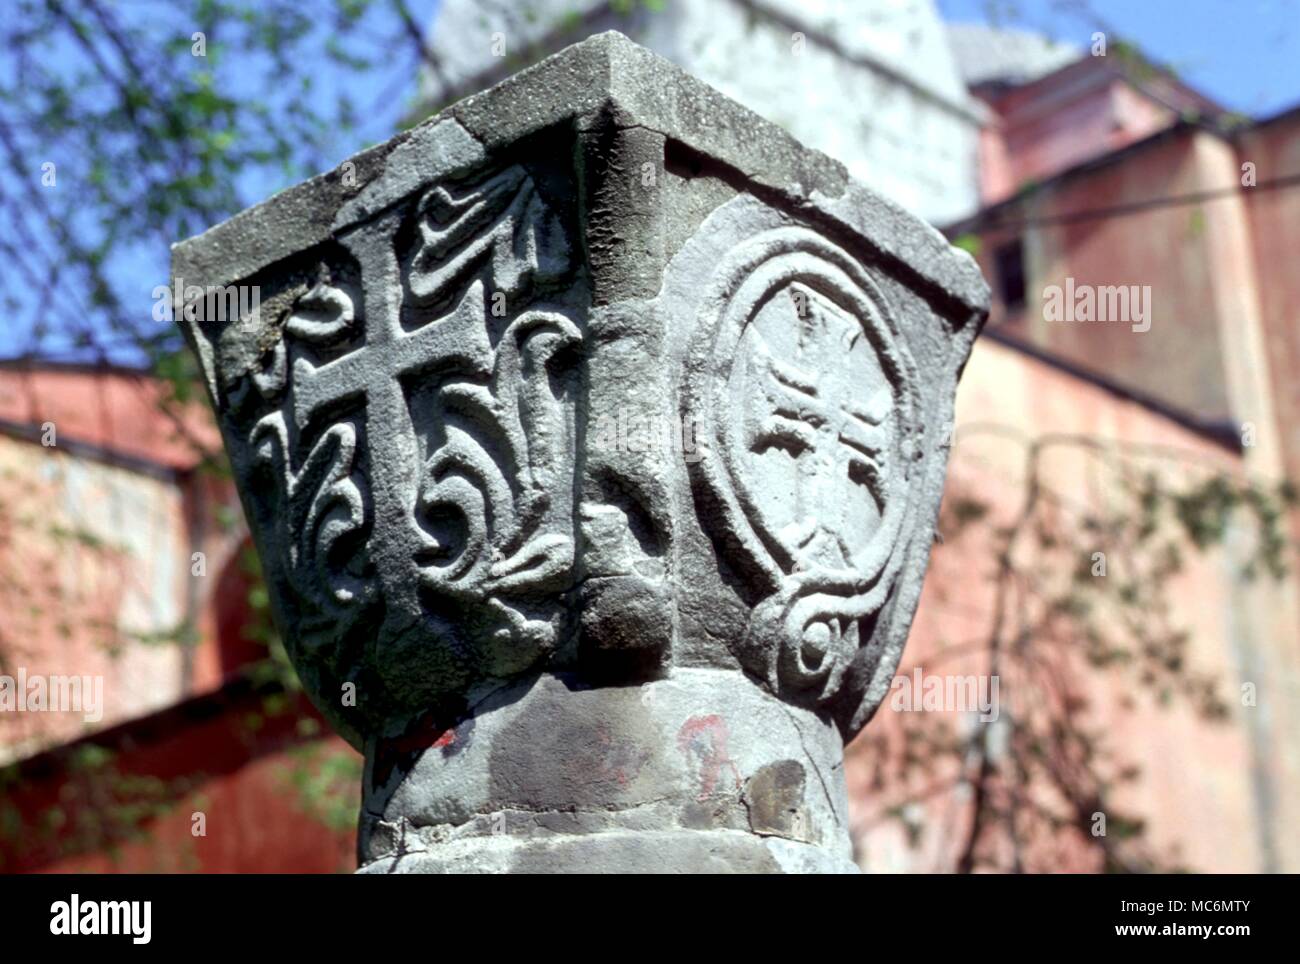 - Symboles des premiers chrétiens croix croix sur un capital, maintenant dans le jardin de Sainte-sophie, Istanbul. 7ème siècle probablement. Banque D'Images